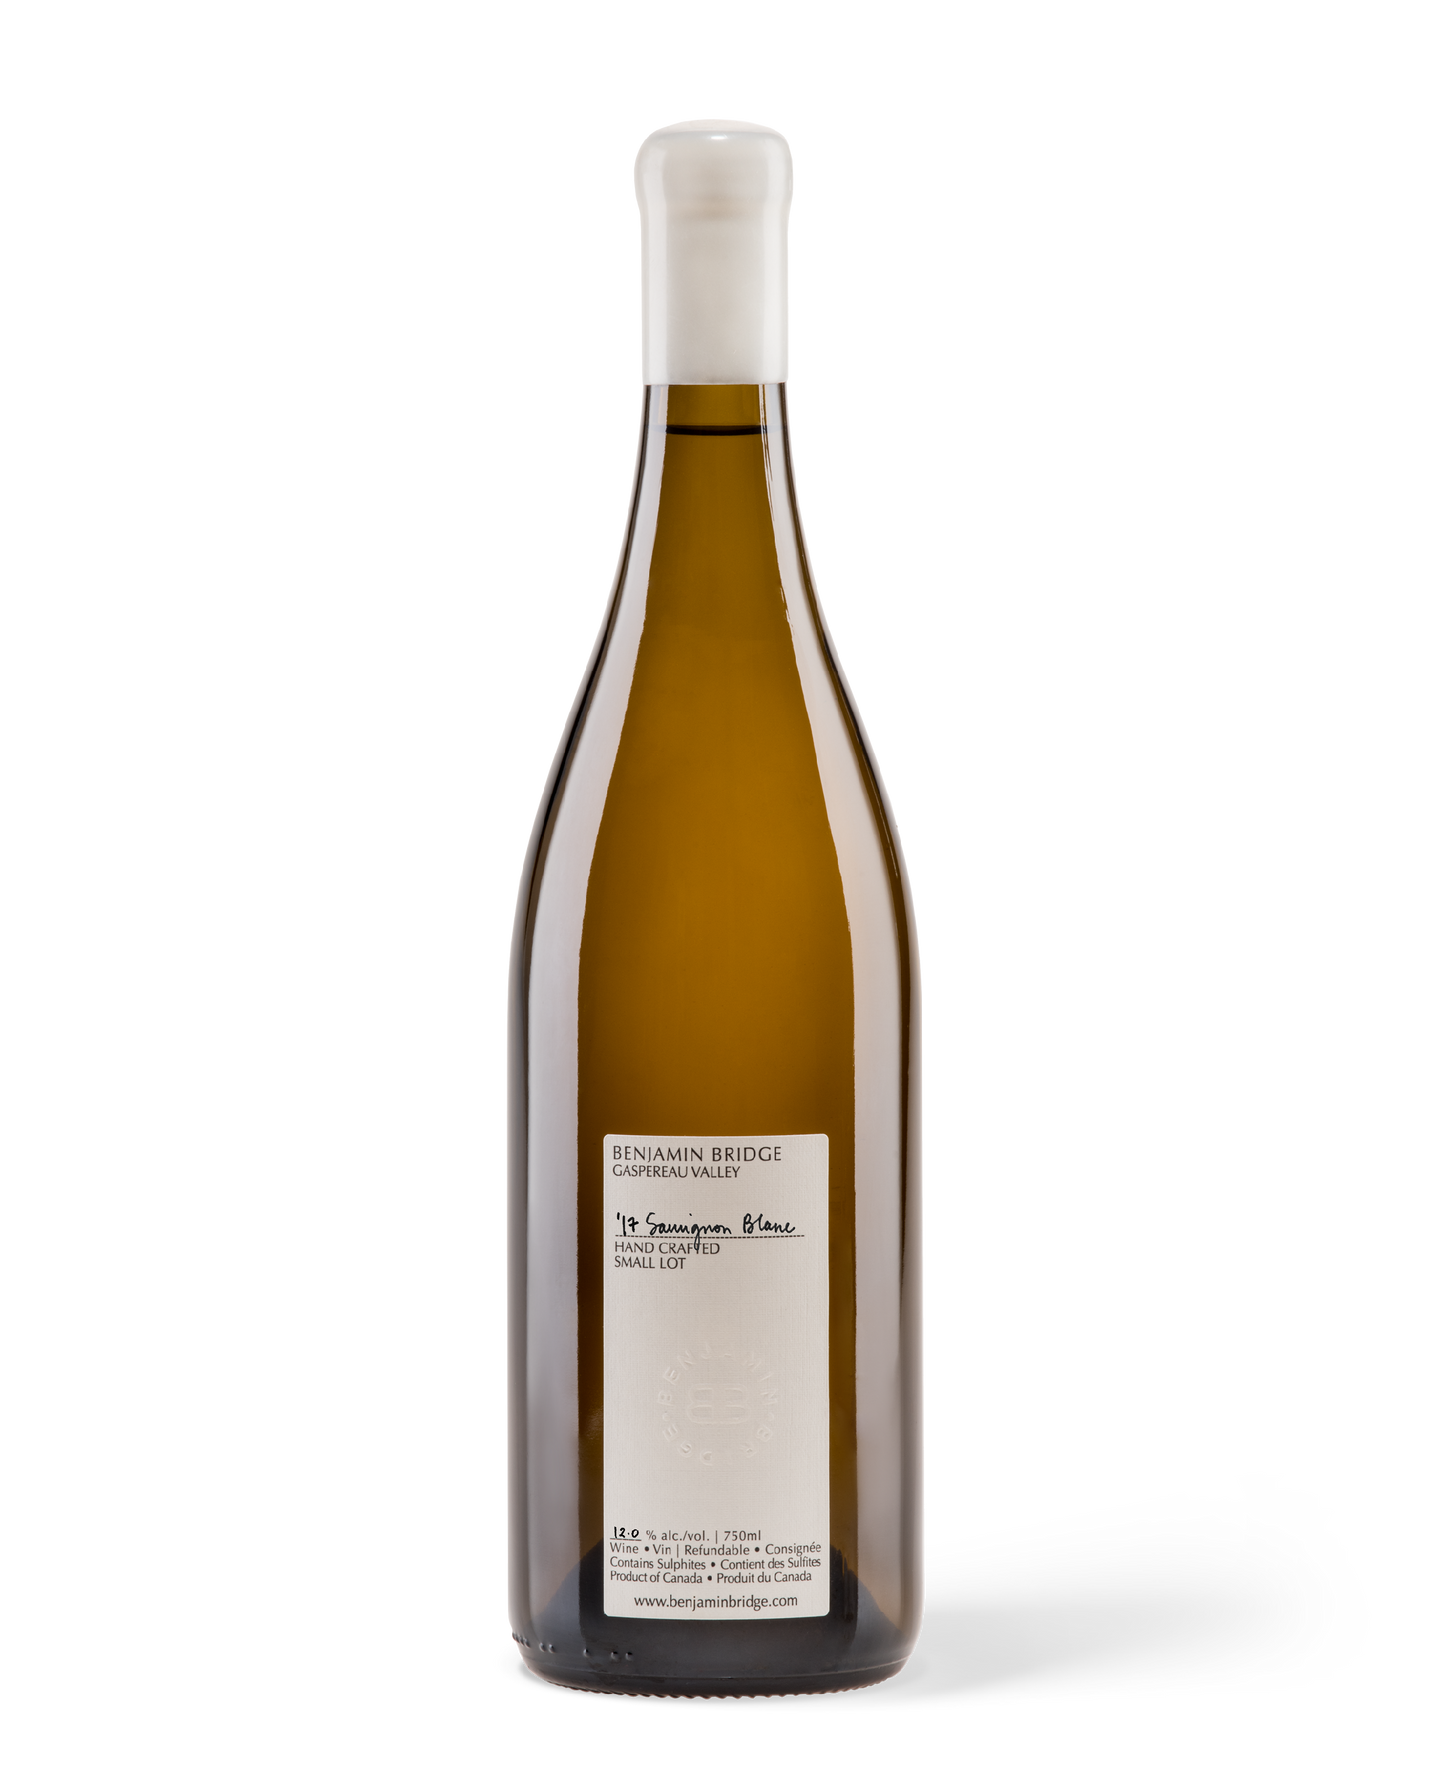 2017 Sauvignon Blanc